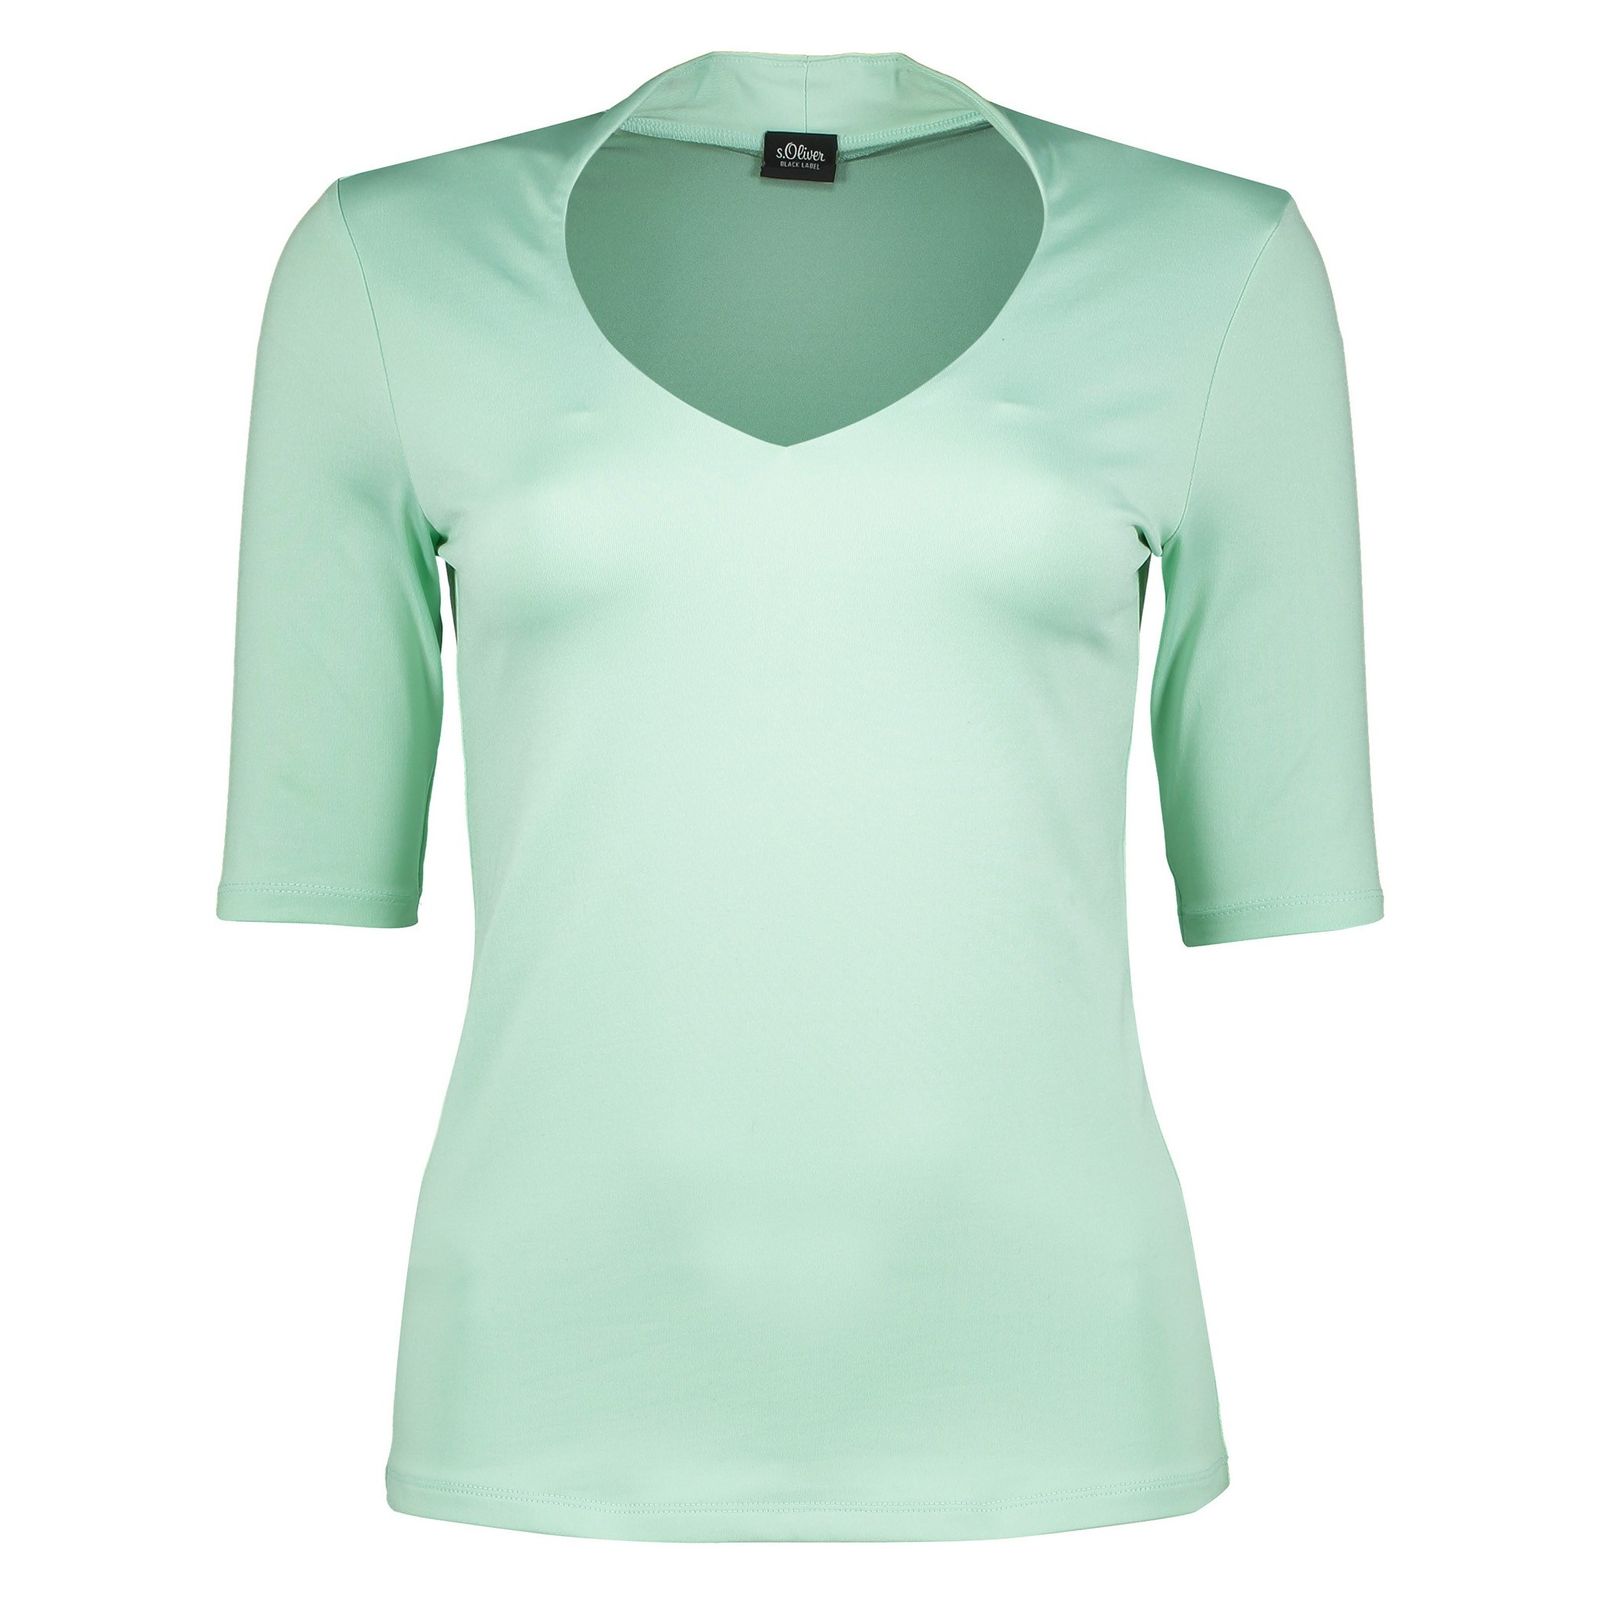 تی شرت یقه هفت زنانه - اس.اولیور - سبز آبي - 1